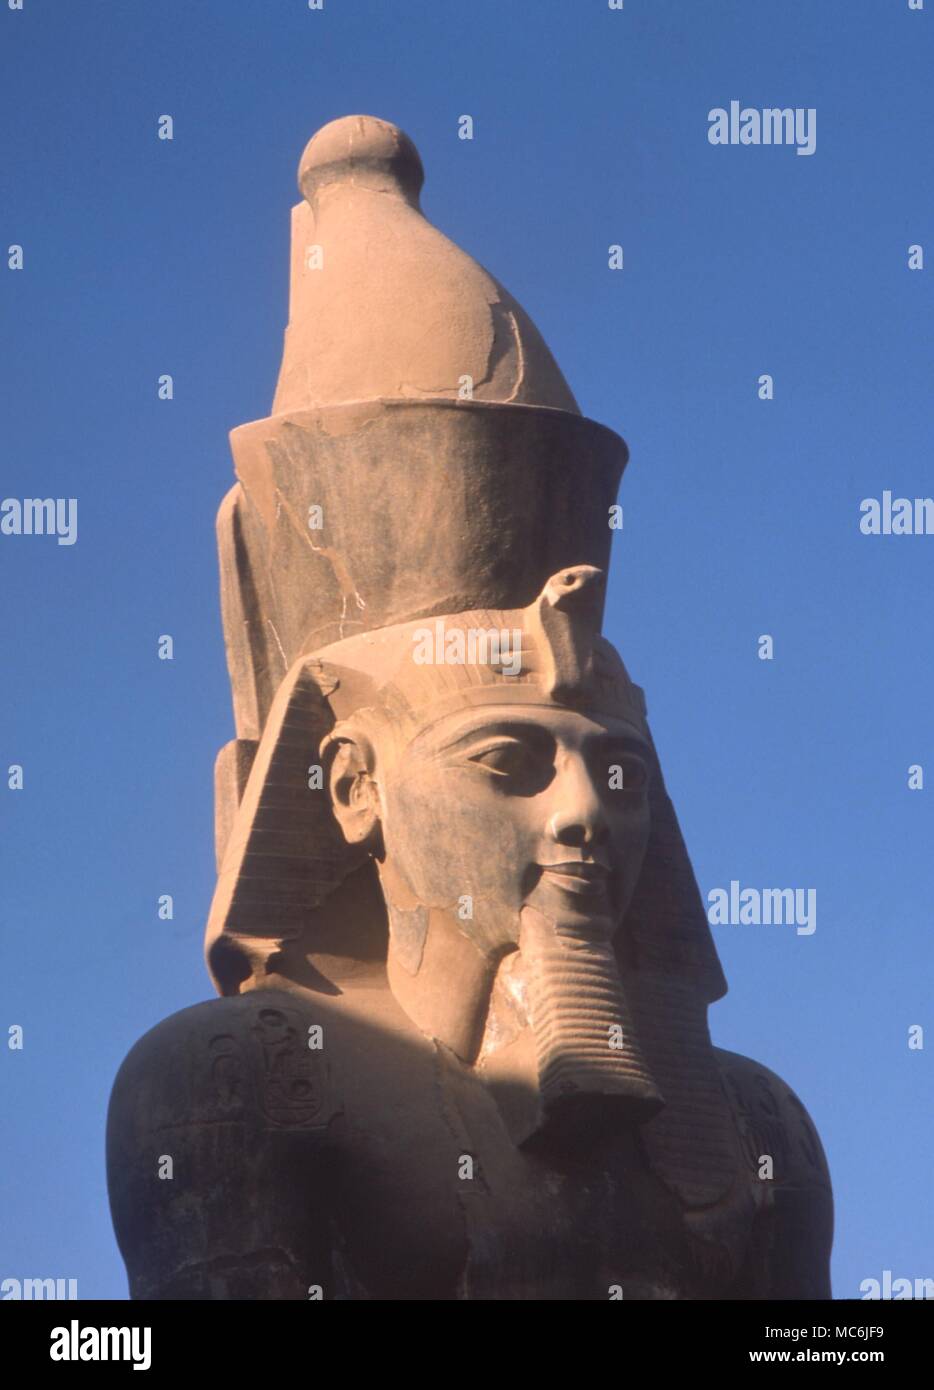 - La Mitología egipcia. El egipcio Uraeus en la corona de Rameses II. Gigantesca estatua en el Templo de Luxor. Foto de stock